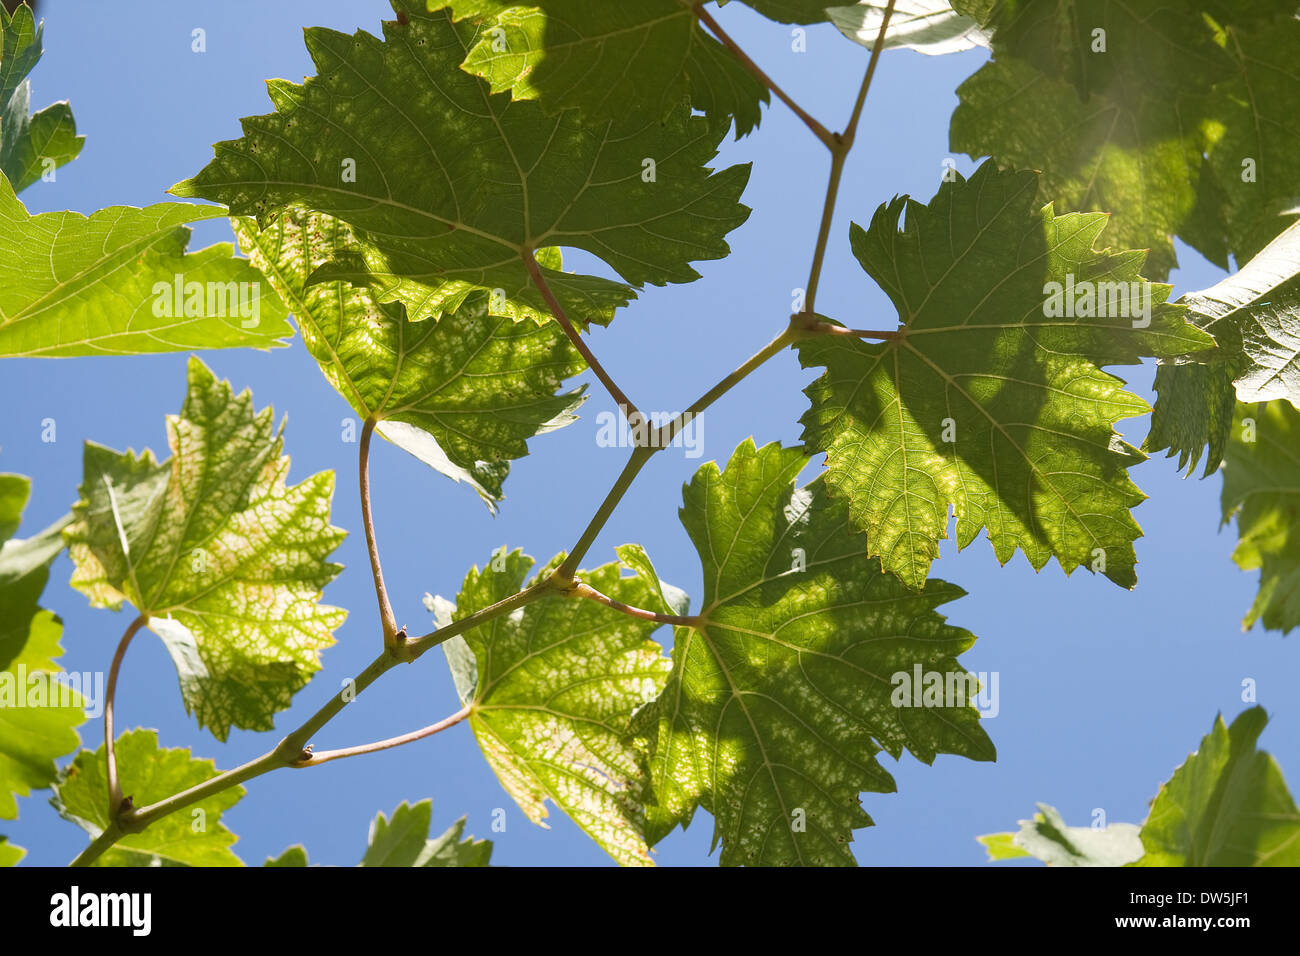 Les feuilles de vigne verte contre ciel bleu clair Banque D'Images